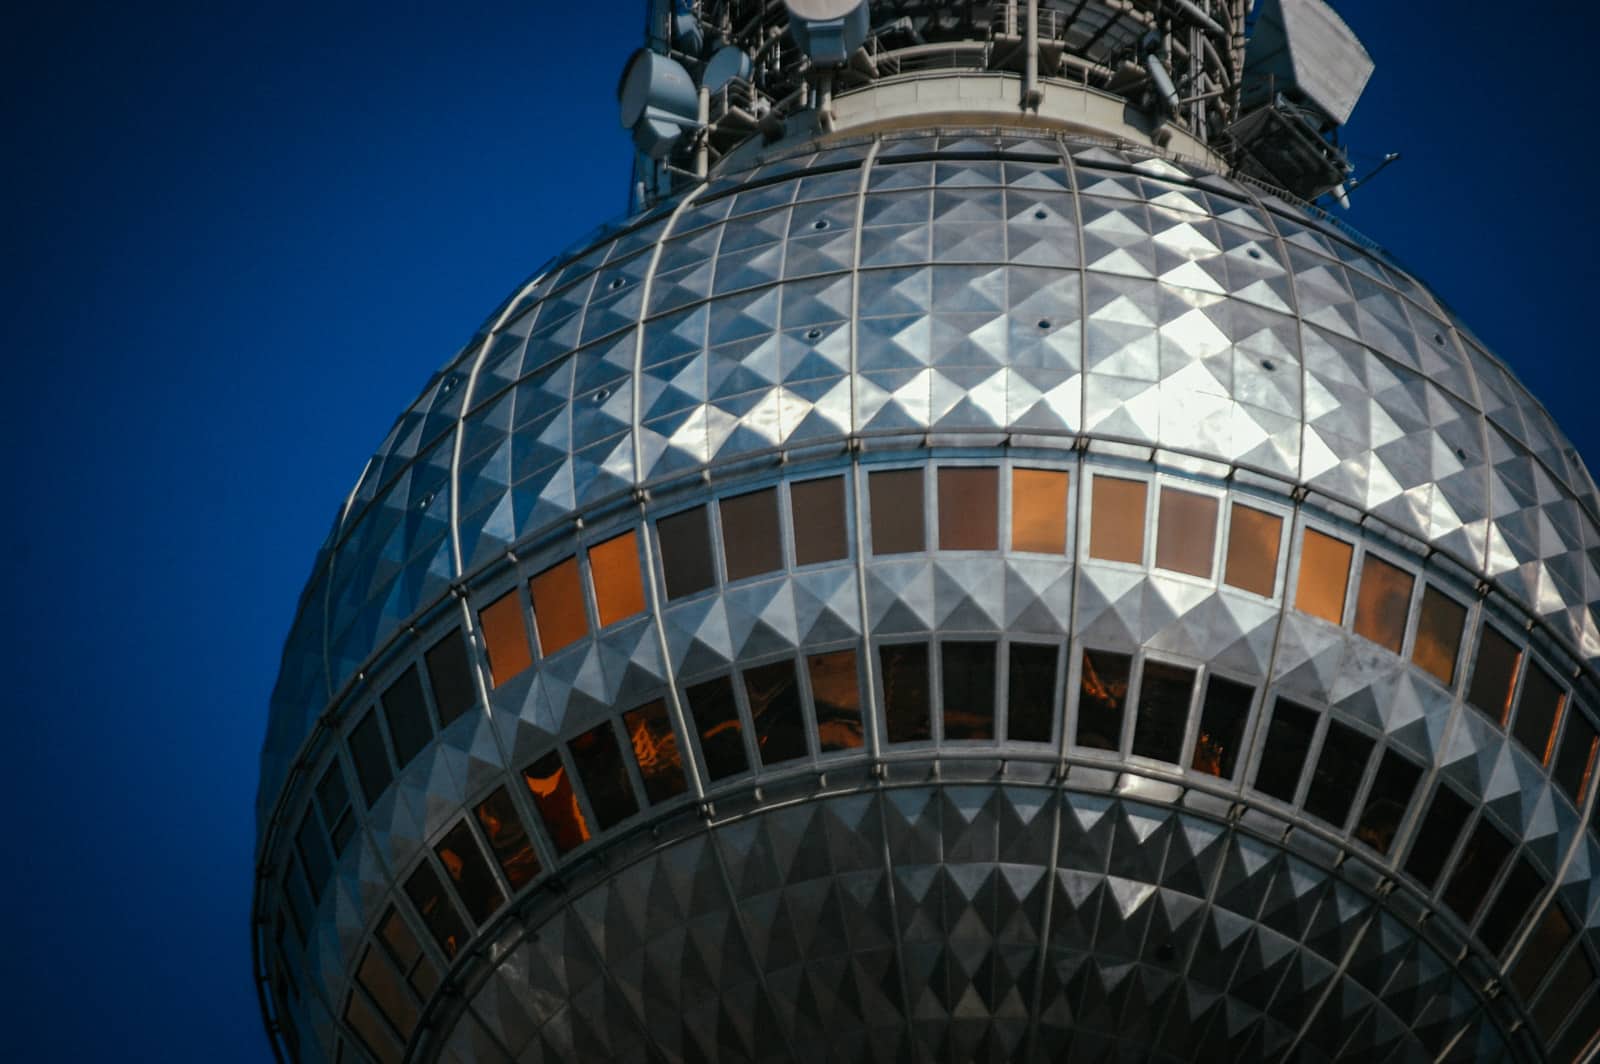 Closeup of the Berlin TV Tower - Fernsehturm